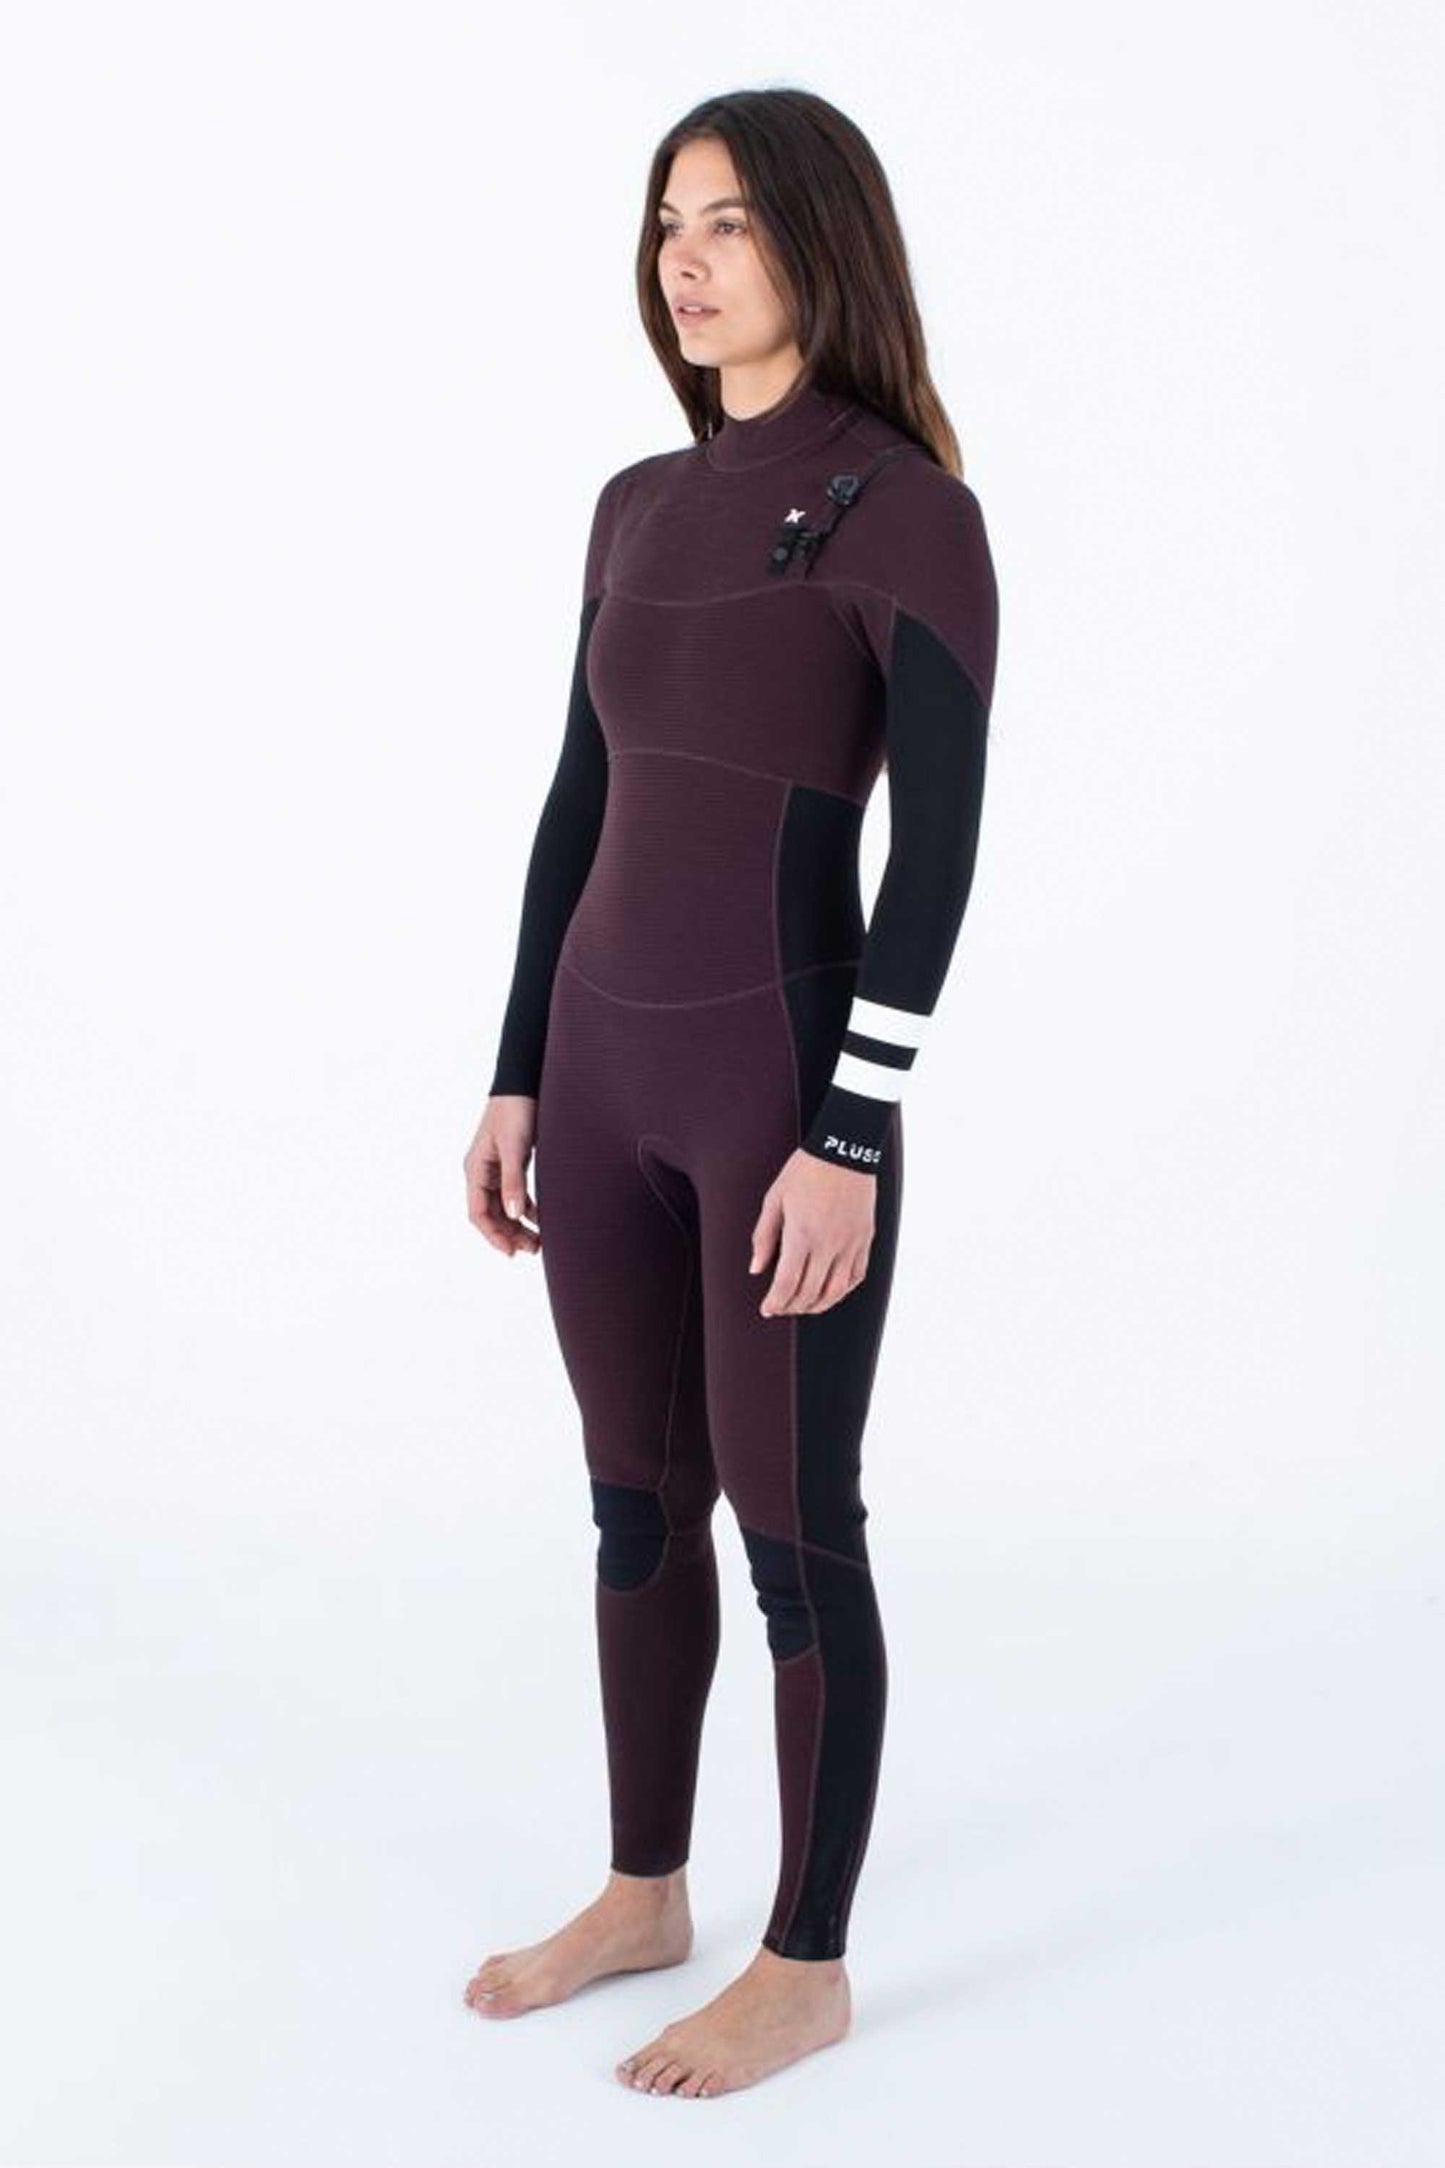 Pukas-Surf-Shop-Hurley-wetsuit-woman-3-2-fullsuit-women